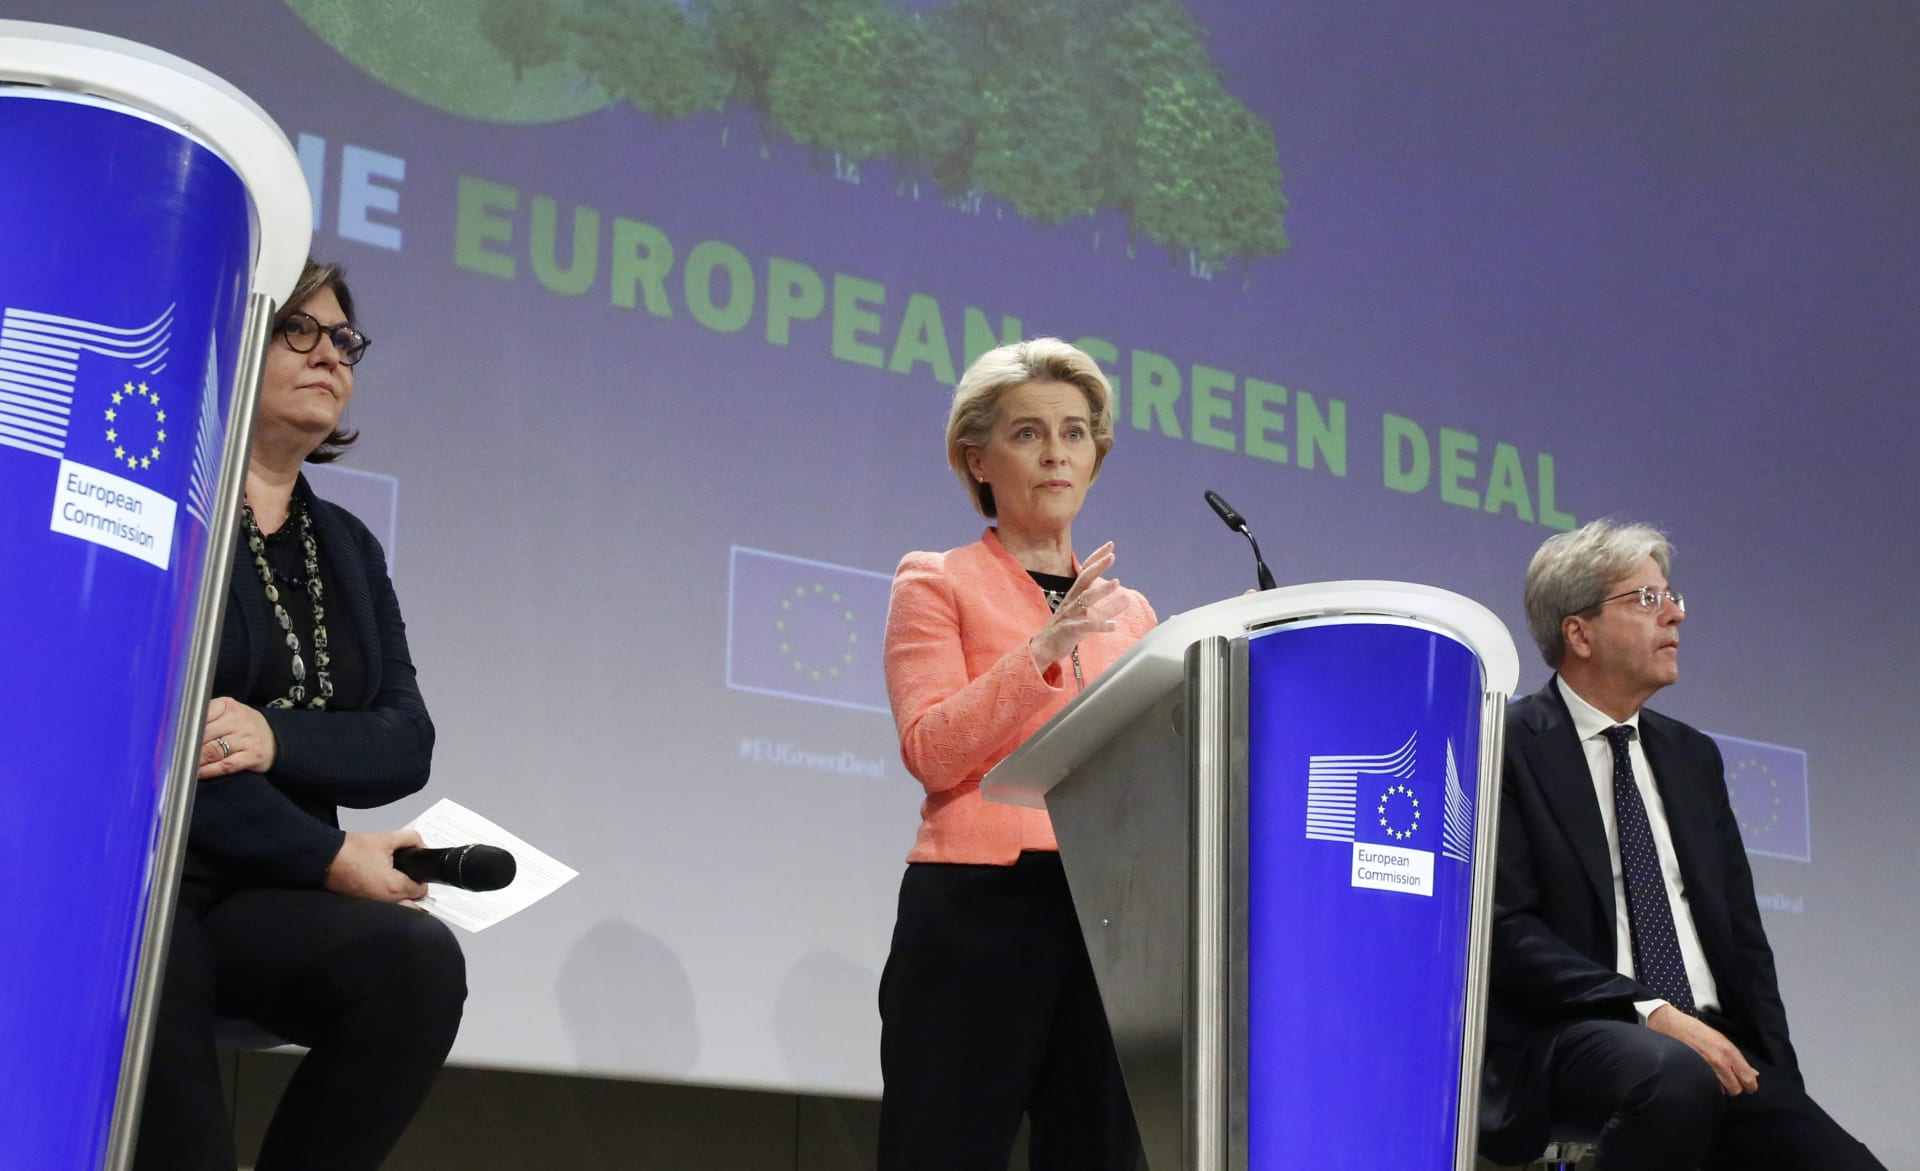 Europoslanec Alexandr Vondra kritizuje „zelený“ projev předsedkyně EK Ursuly von der Leyenové.